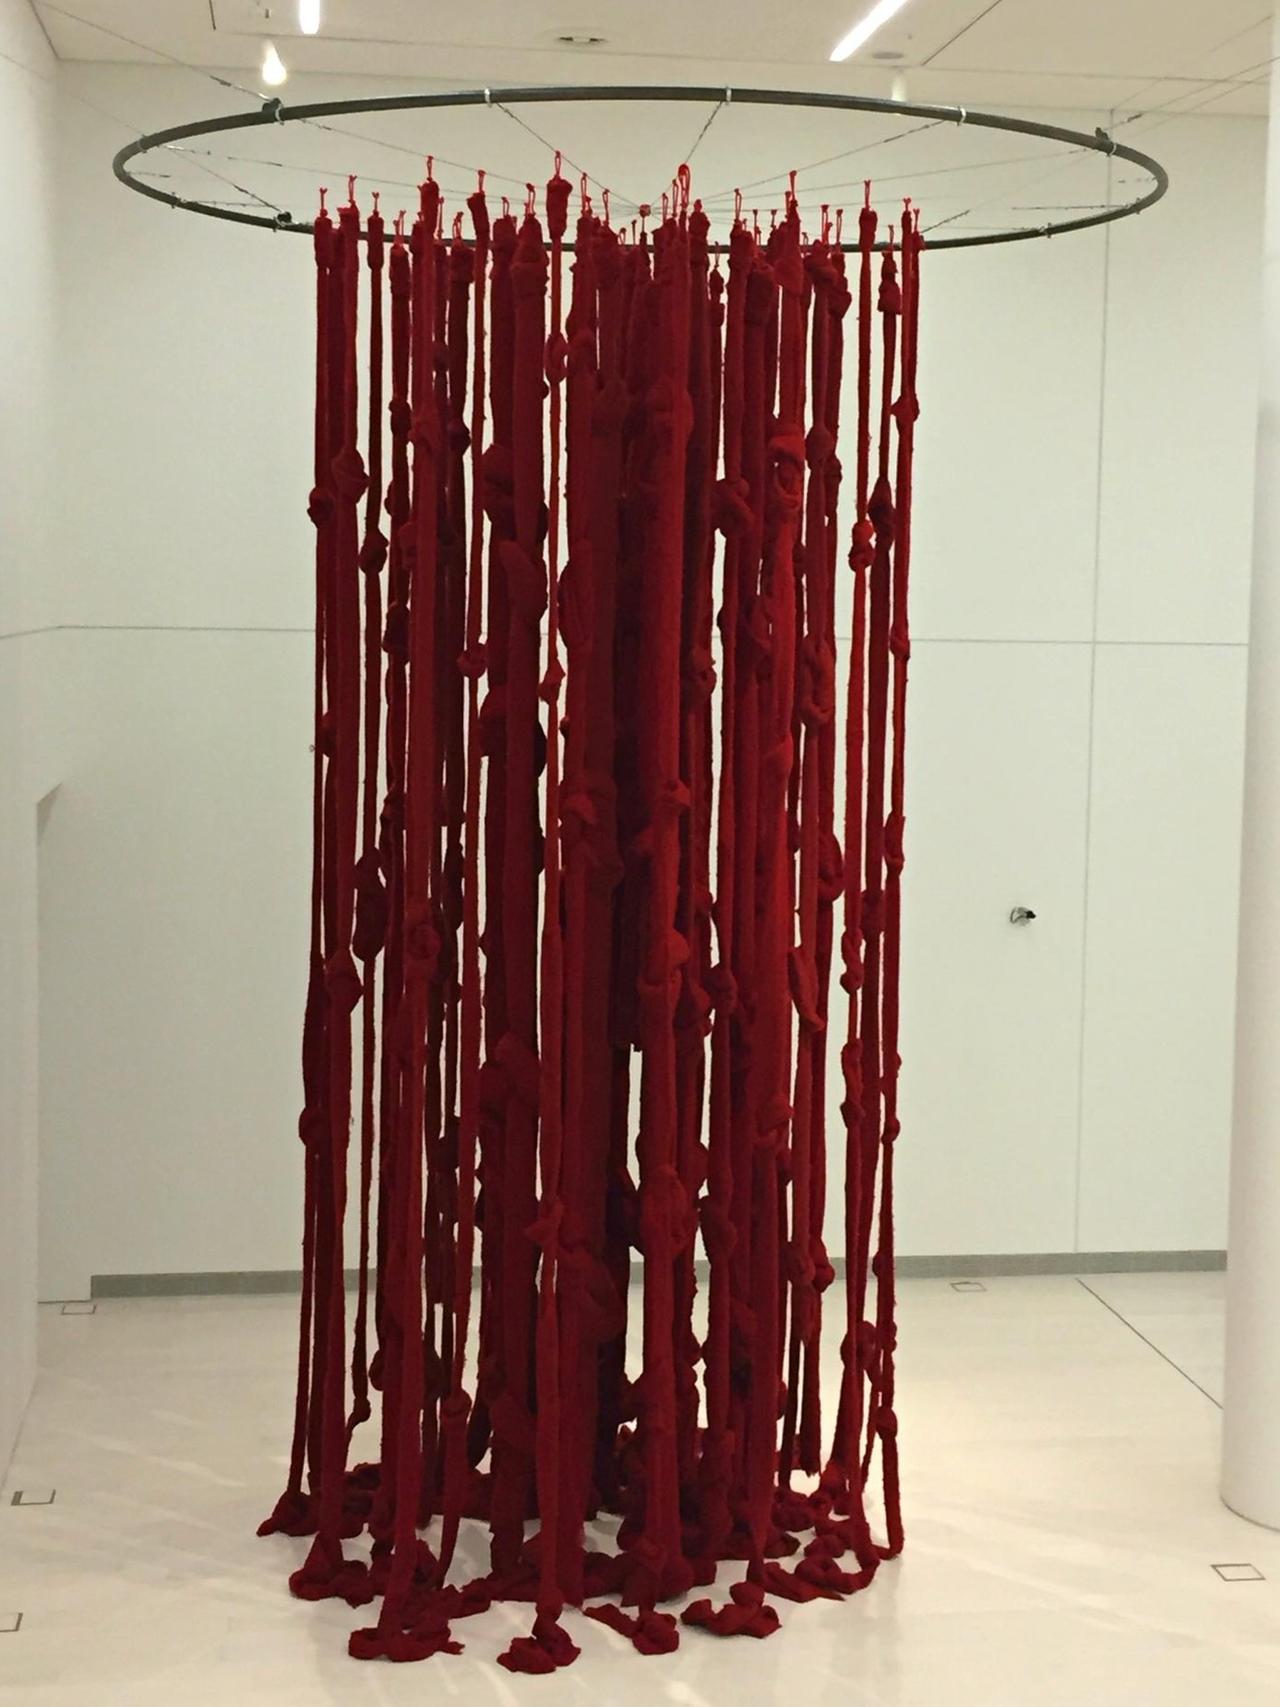 Dicke, verfilzte rote Wollfäden hängen von einem Rad, das an der Decke befestigt ist.